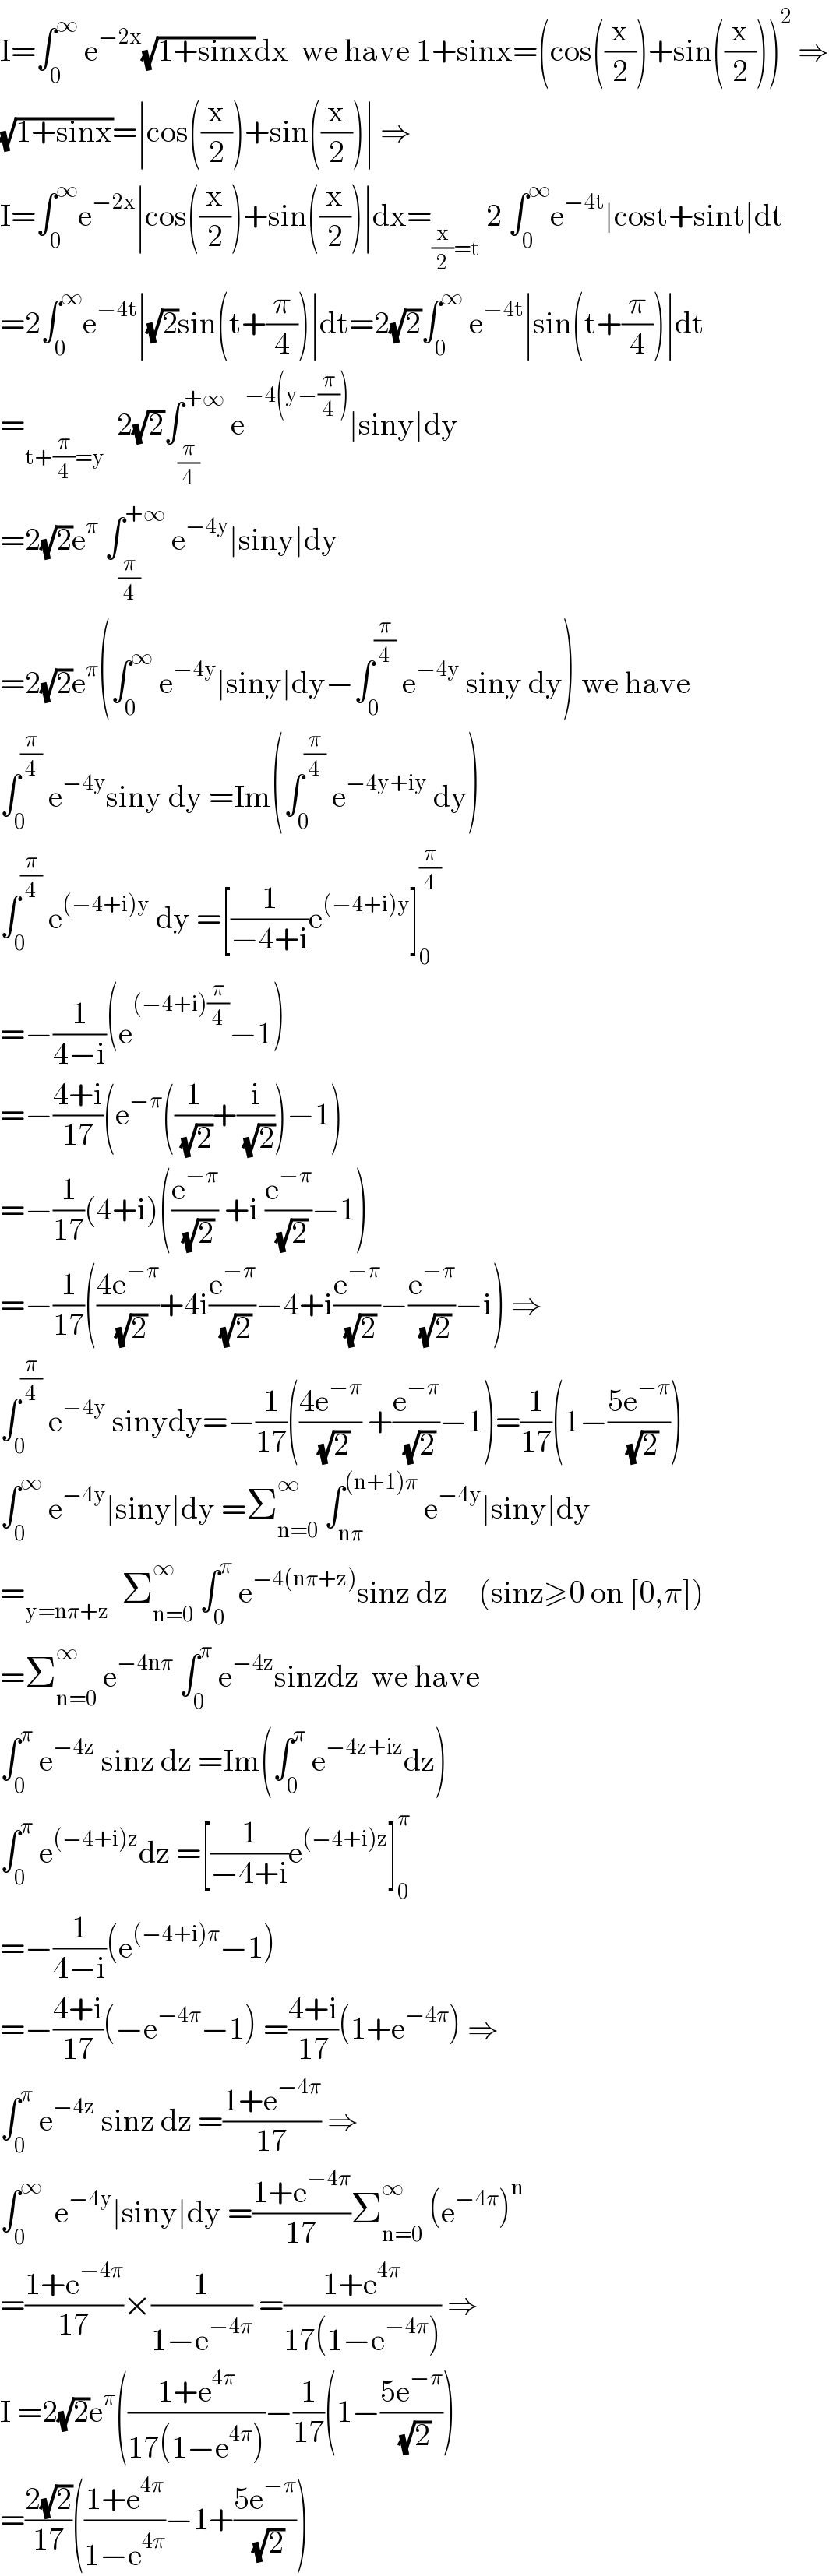 I=∫_0 ^∞  e^(−2x) (√(1+sinx))dx  we have 1+sinx=(cos((x/2))+sin((x/2)))^2  ⇒  (√(1+sinx))=∣cos((x/2))+sin((x/2))∣ ⇒  I=∫_0 ^∞ e^(−2x) ∣cos((x/2))+sin((x/2))∣dx=_((x/2)=t)  2 ∫_0 ^∞ e^(−4t) ∣cost+sint∣dt  =2∫_0 ^∞ e^(−4t) ∣(√2)sin(t+(π/4))∣dt=2(√2)∫_0 ^∞  e^(−4t) ∣sin(t+(π/4))∣dt  =_(t+(π/4)=y)   2(√2)∫_(π/4) ^(+∞)  e^(−4(y−(π/4))) ∣siny∣dy  =2(√2)e^π  ∫_(π/4) ^(+∞)  e^(−4y) ∣siny∣dy  =2(√2)e^π (∫_0 ^∞  e^(−4y) ∣siny∣dy−∫_0 ^(π/4)  e^(−4y)  siny dy) we have  ∫_0 ^(π/4)  e^(−4y) siny dy =Im(∫_0 ^(π/4)  e^(−4y+iy)  dy)  ∫_0 ^(π/4)  e^((−4+i)y)  dy =[(1/(−4+i))e^((−4+i)y) ]_0 ^(π/4)   =−(1/(4−i))(e^((−4+i)(π/4)) −1)  =−((4+i)/(17))(e^(−π) ((1/( (√2)))+(i/( (√2))))−1)  =−(1/(17))(4+i)((e^(−π) /( (√2))) +i (e^(−π) /( (√2)))−1)  =−(1/(17))(((4e^(−π) )/( (√2)))+4i(e^(−π) /( (√2)))−4+i(e^(−π) /( (√2)))−(e^(−π) /( (√2)))−i) ⇒  ∫_0 ^(π/4)  e^(−4y)  sinydy=−(1/(17))(((4e^(−π) )/( (√2))) +(e^(−π) /( (√2)))−1)=(1/(17))(1−((5e^(−π) )/( (√2))))  ∫_0 ^∞  e^(−4y) ∣siny∣dy =Σ_(n=0) ^∞  ∫_(nπ) ^((n+1)π)  e^(−4y) ∣siny∣dy  =_(y=nπ+z)   Σ_(n=0) ^∞  ∫_0 ^π  e^(−4(nπ+z)) sinz dz     (sinz≥0 on [0,π])  =Σ_(n=0) ^∞  e^(−4nπ)  ∫_0 ^π  e^(−4z) sinzdz  we have  ∫_0 ^π  e^(−4z)  sinz dz =Im(∫_0 ^π  e^(−4z+iz) dz)  ∫_0 ^π  e^((−4+i)z) dz =[(1/(−4+i))e^((−4+i)z) ]_0 ^π   =−(1/(4−i))(e^((−4+i)π) −1)  =−((4+i)/(17))(−e^(−4π) −1) =((4+i)/(17))(1+e^(−4π) ) ⇒  ∫_0 ^π  e^(−4z)  sinz dz =((1+e^(−4π) )/(17)) ⇒  ∫_0 ^∞   e^(−4y) ∣siny∣dy =((1+e^(−4π) )/(17))Σ_(n=0) ^∞  (e^(−4π) )^n   =((1+e^(−4π) )/(17))×(1/(1−e^(−4π) )) =((1+e^(4π) )/(17(1−e^(−4π) ))) ⇒  I =2(√2)e^π (((1+e^(4π) )/(17(1−e^(4π) )))−(1/(17))(1−((5e^(−π) )/( (√2))))  =((2(√2))/(17))(((1+e^(4π) )/(1−e^(4π) ))−1+((5e^(−π) )/( (√2))))  